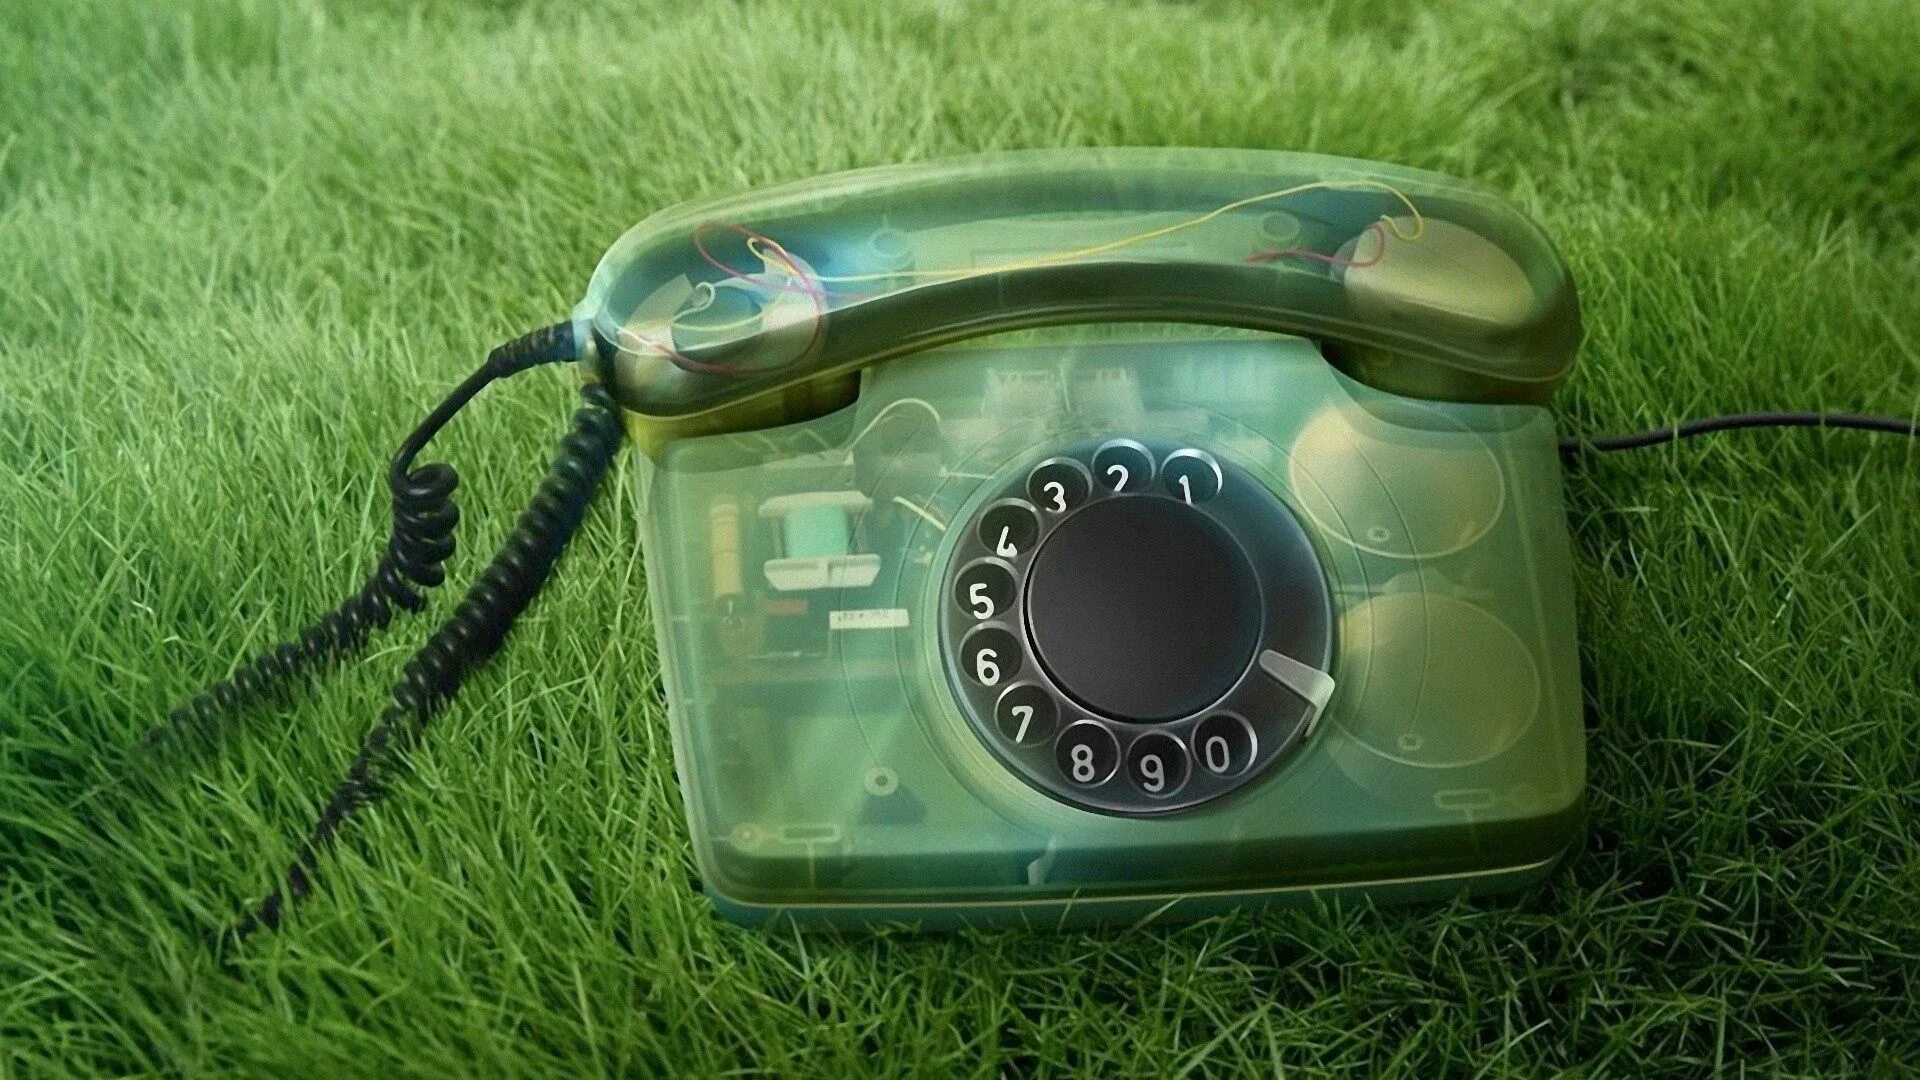 Обои на звонок телефона. Телефон. Зеленый телефон. Телефонная трубка.